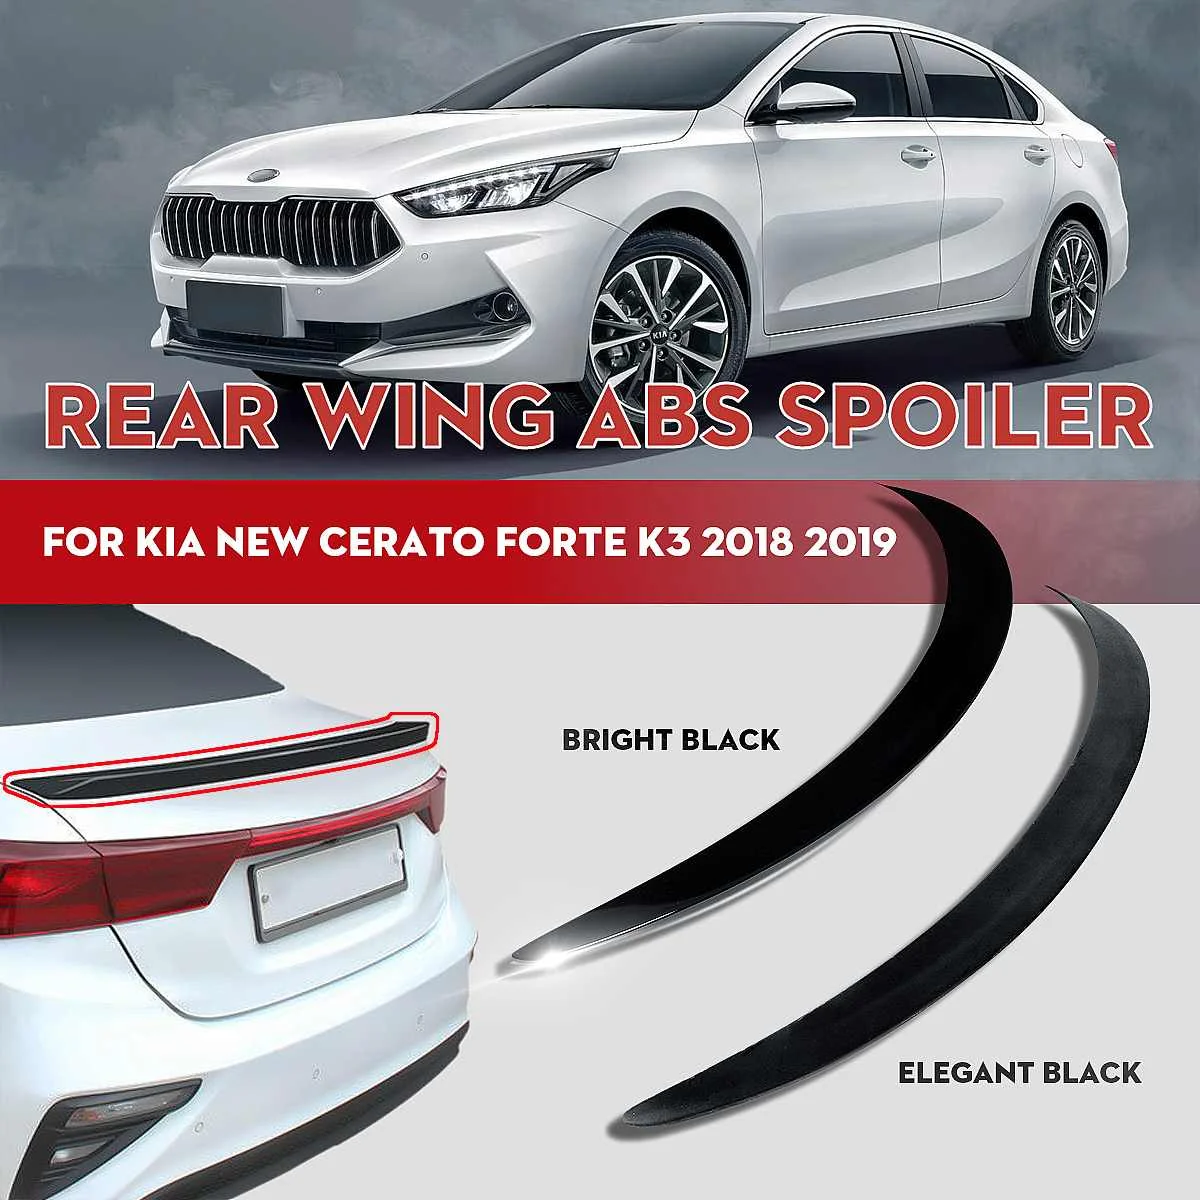 

RMAUTO глянцевый черный Автомобильный задний спойлер для багажника комплект для кузова для Kia Cerato Forte K3 2019-2021 задний спойлер крыло автомобильные аксессуары